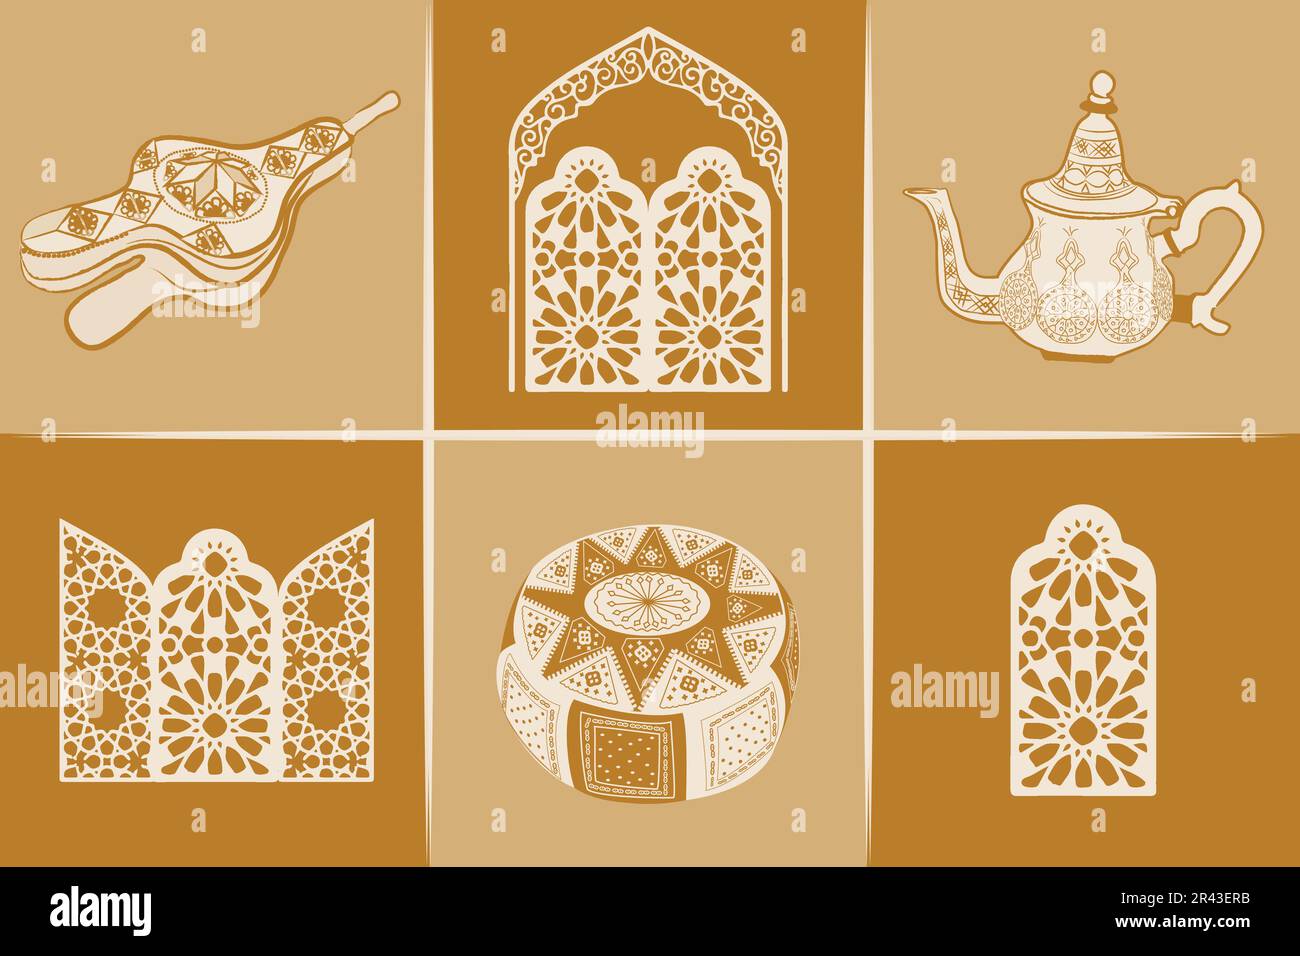 ENSEMBLE de symboles culturels marocains. Collection Maroc Voyage d'icônes Vector isolé illustration, couleurs terre cuite Illustration de Vecteur